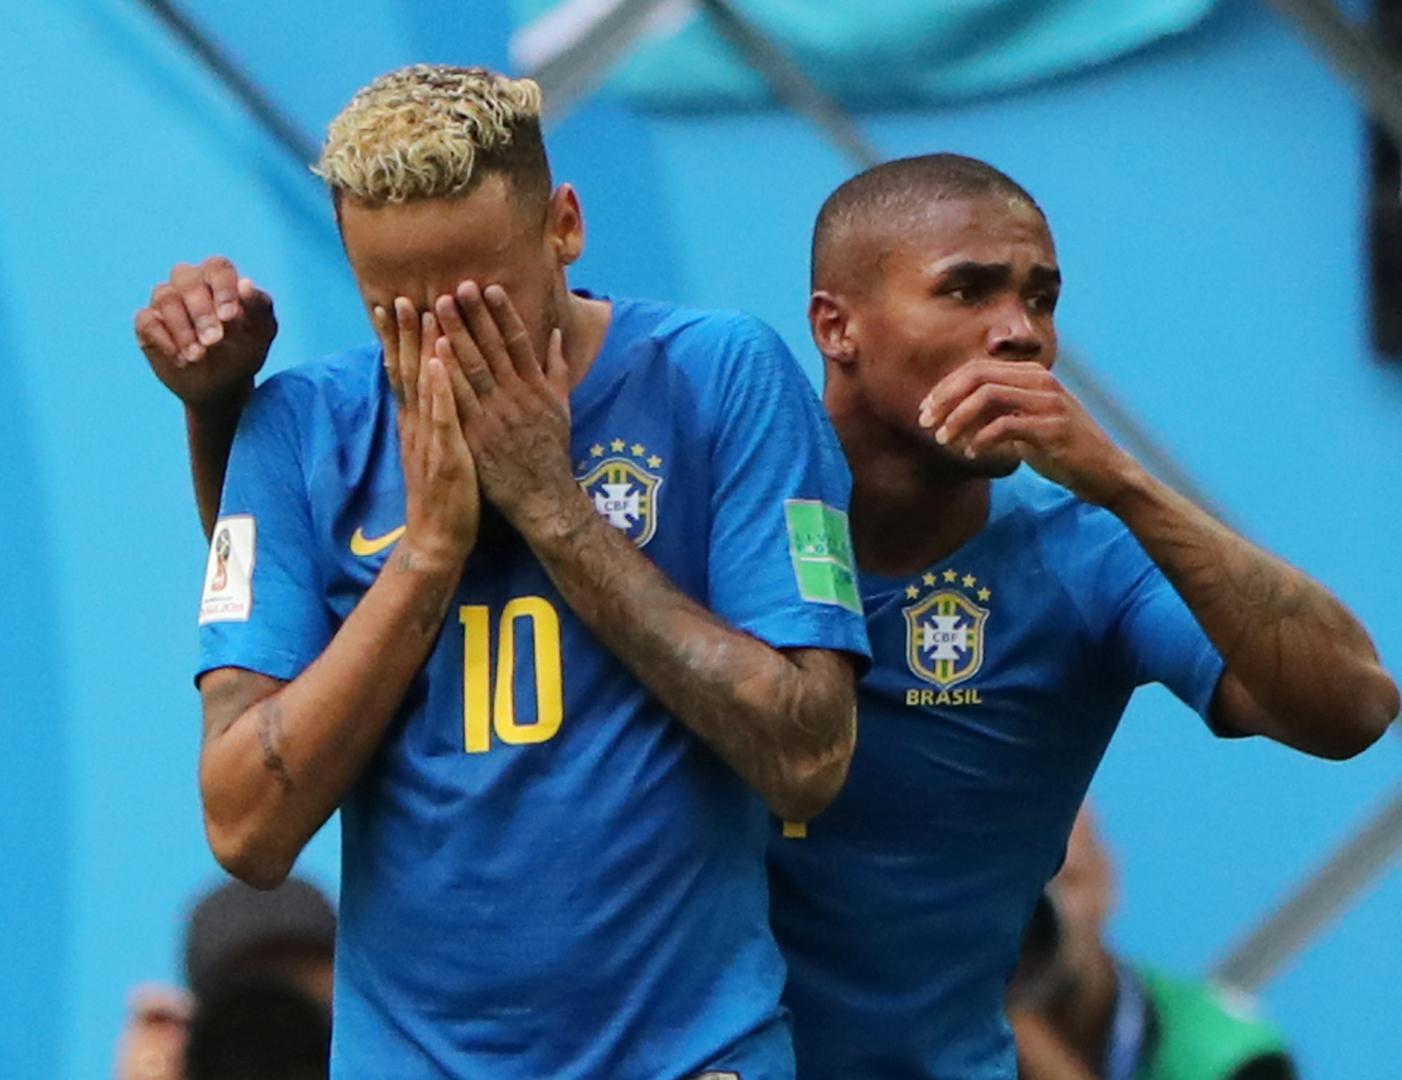 Nakon posljednjeg sučevog zvižduka Neymar se potpuno slomio, kleknuo je na travnjak i zaplakao.

